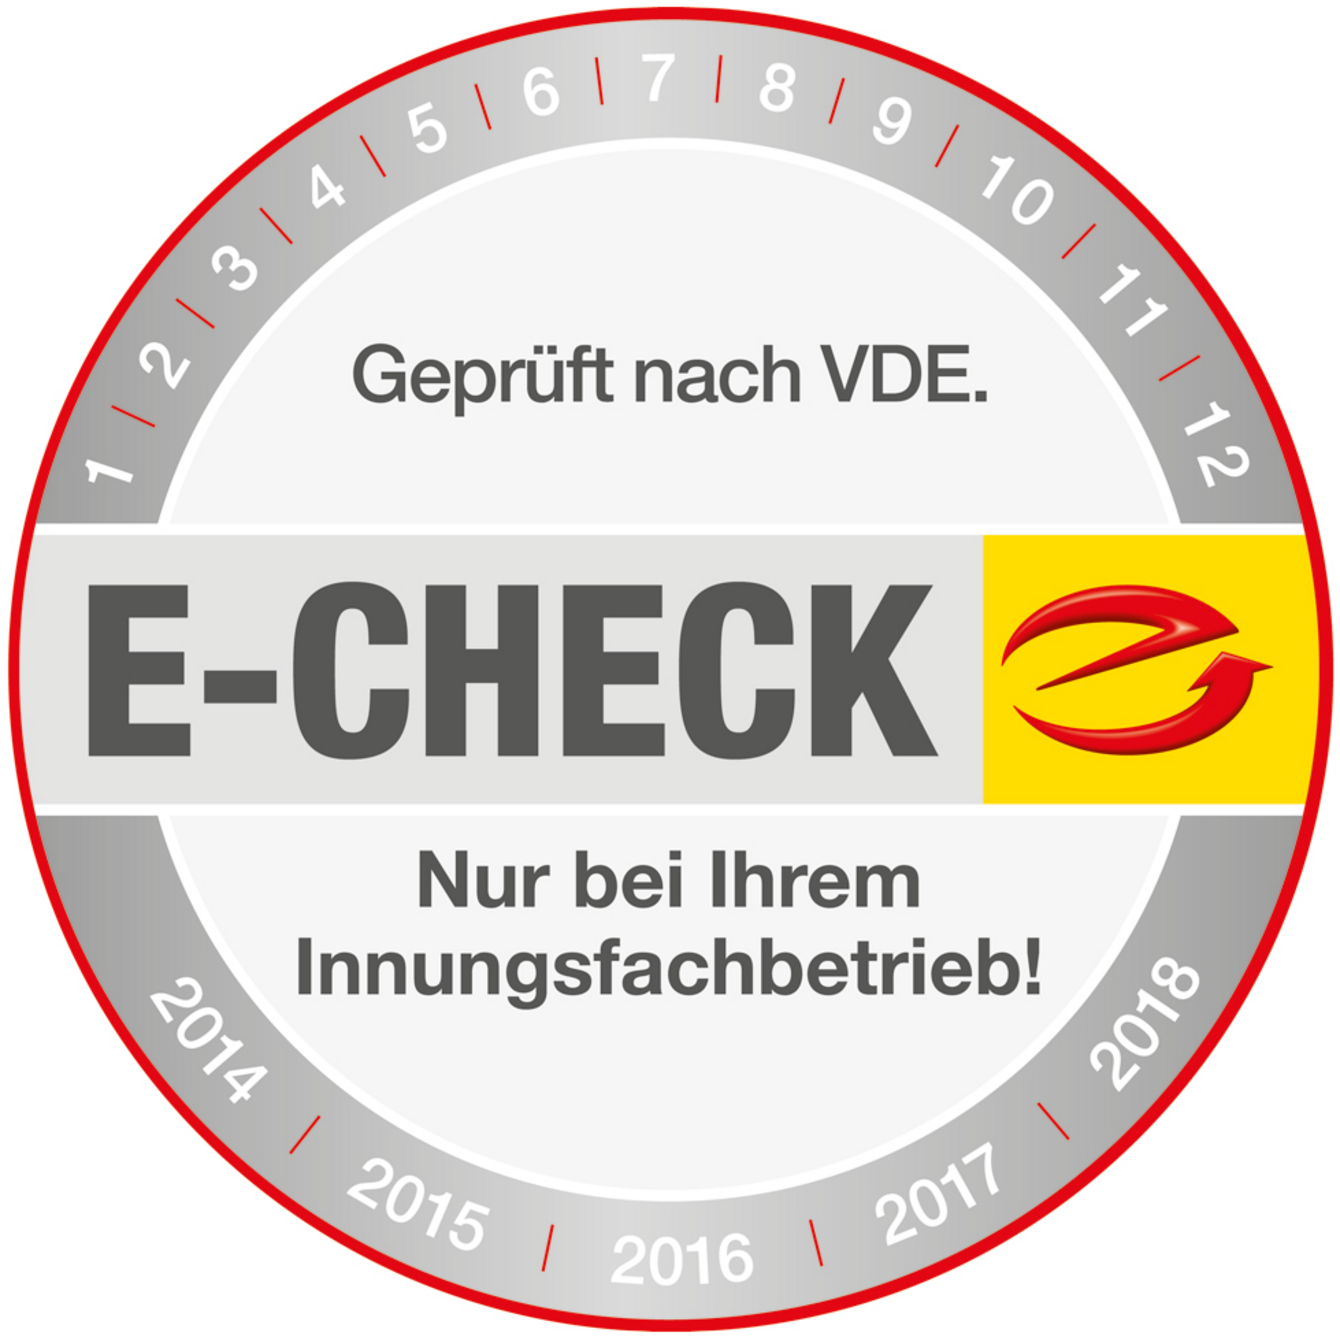 Der E-Check bei Elektro Schymala GmbH in Ingolstadt